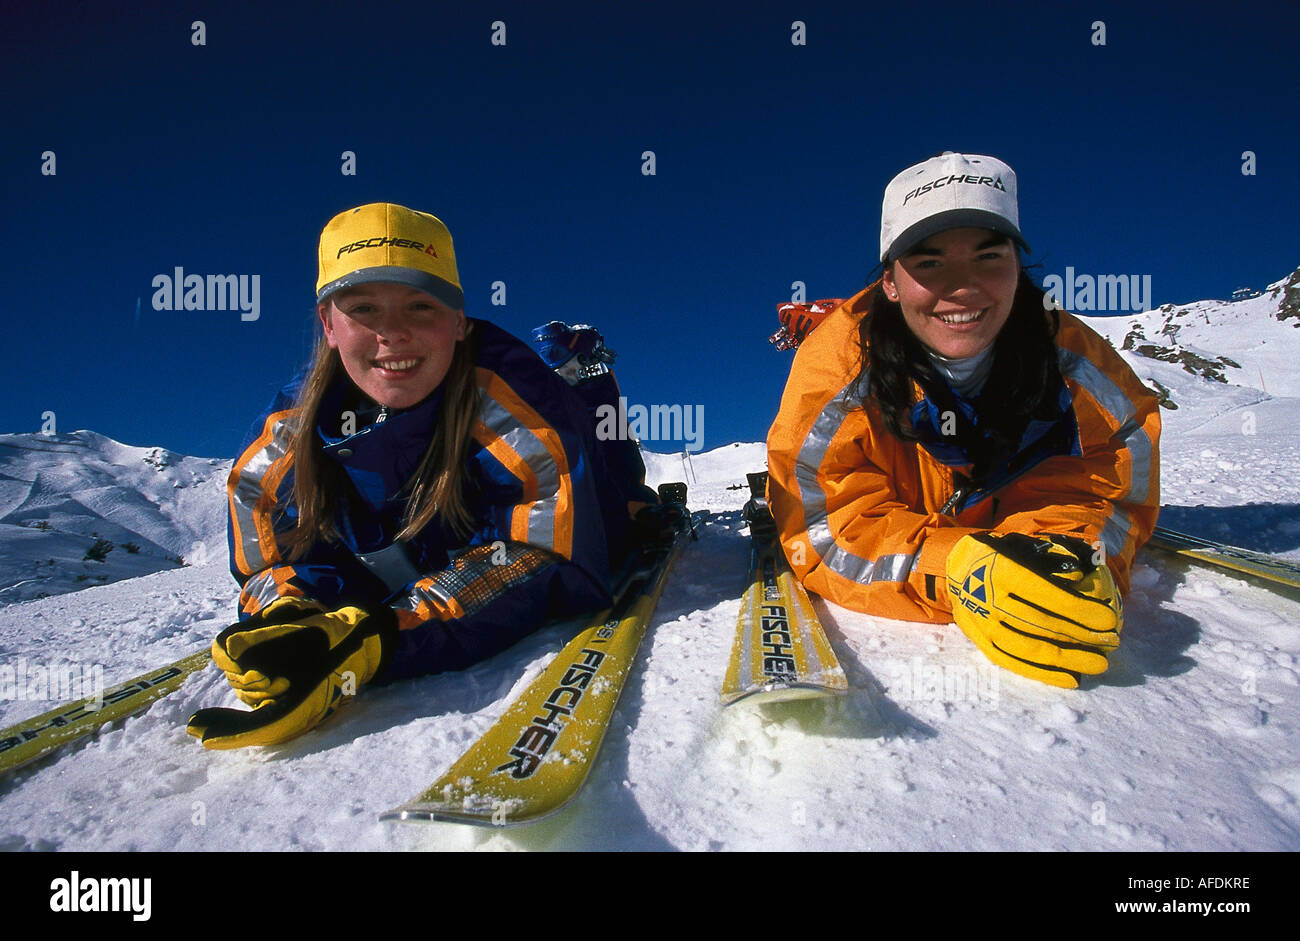 Sci, Zwei Frauen im Schnee, sport Foto Stock